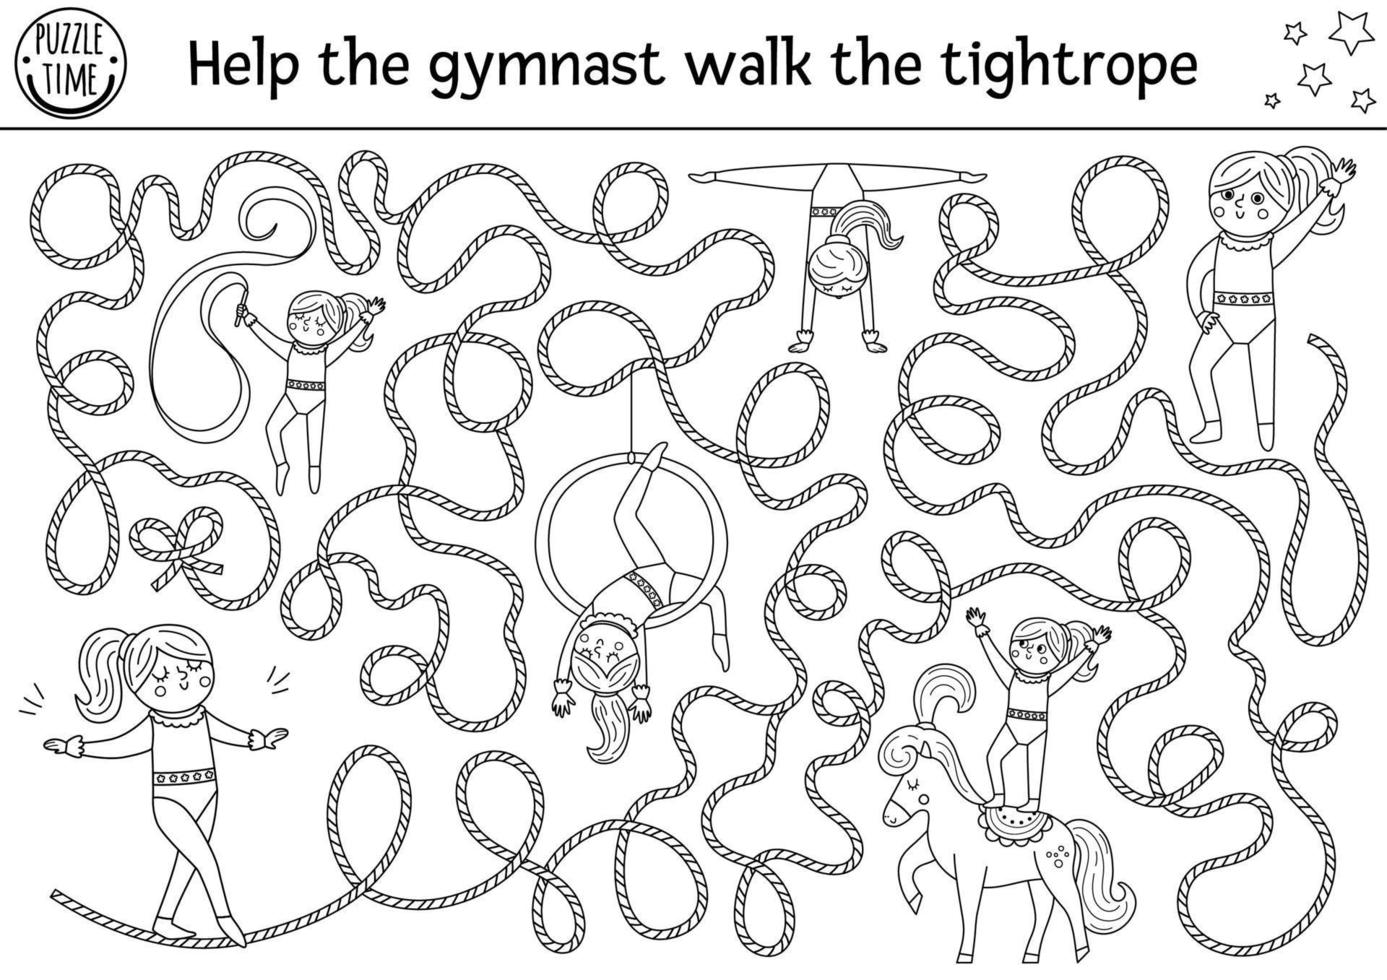 Zirkus-Schwarz-Weiß-Labyrinth für Kinder mit Turner, der auf dem Seil läuft. Vergnügungsshow Vorschule druckbare Linienaktivität mit süßem Akrobatenmädchen. unterhaltung labyrinth malseite vektor